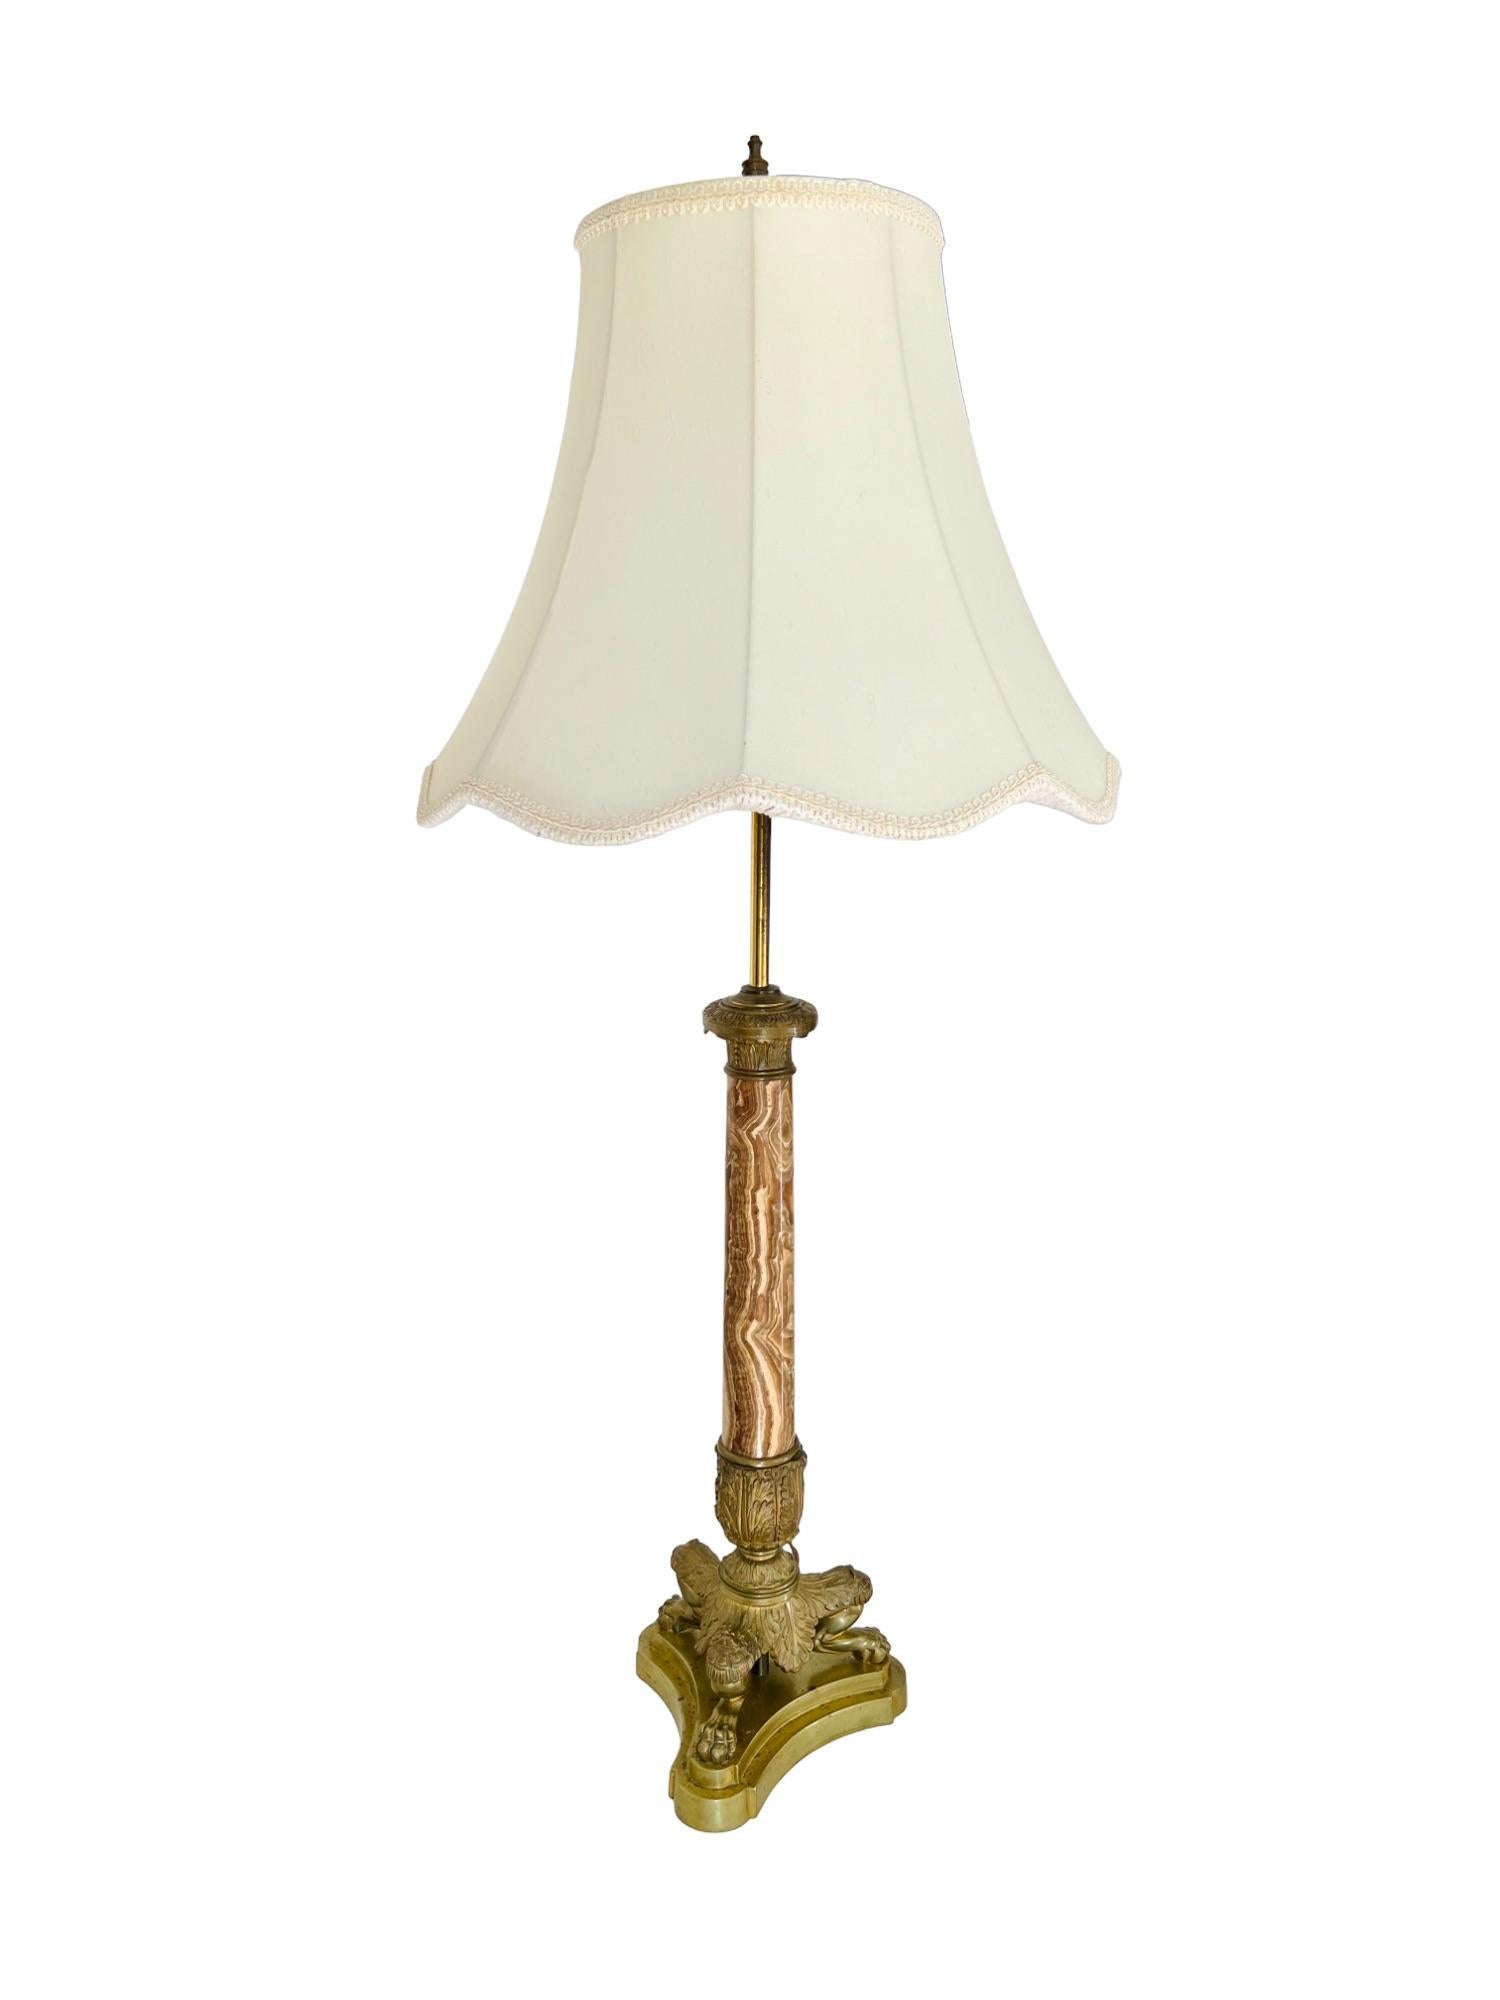 Lampe de table à deux lumières avec abat-jour, de style Empire français (converti) du 19e siècle. De style néoclassique, elle se compose d'une tige effilée en onyx ornée de montures décoratives en laiton, soutenue par une base triforme à pattes de